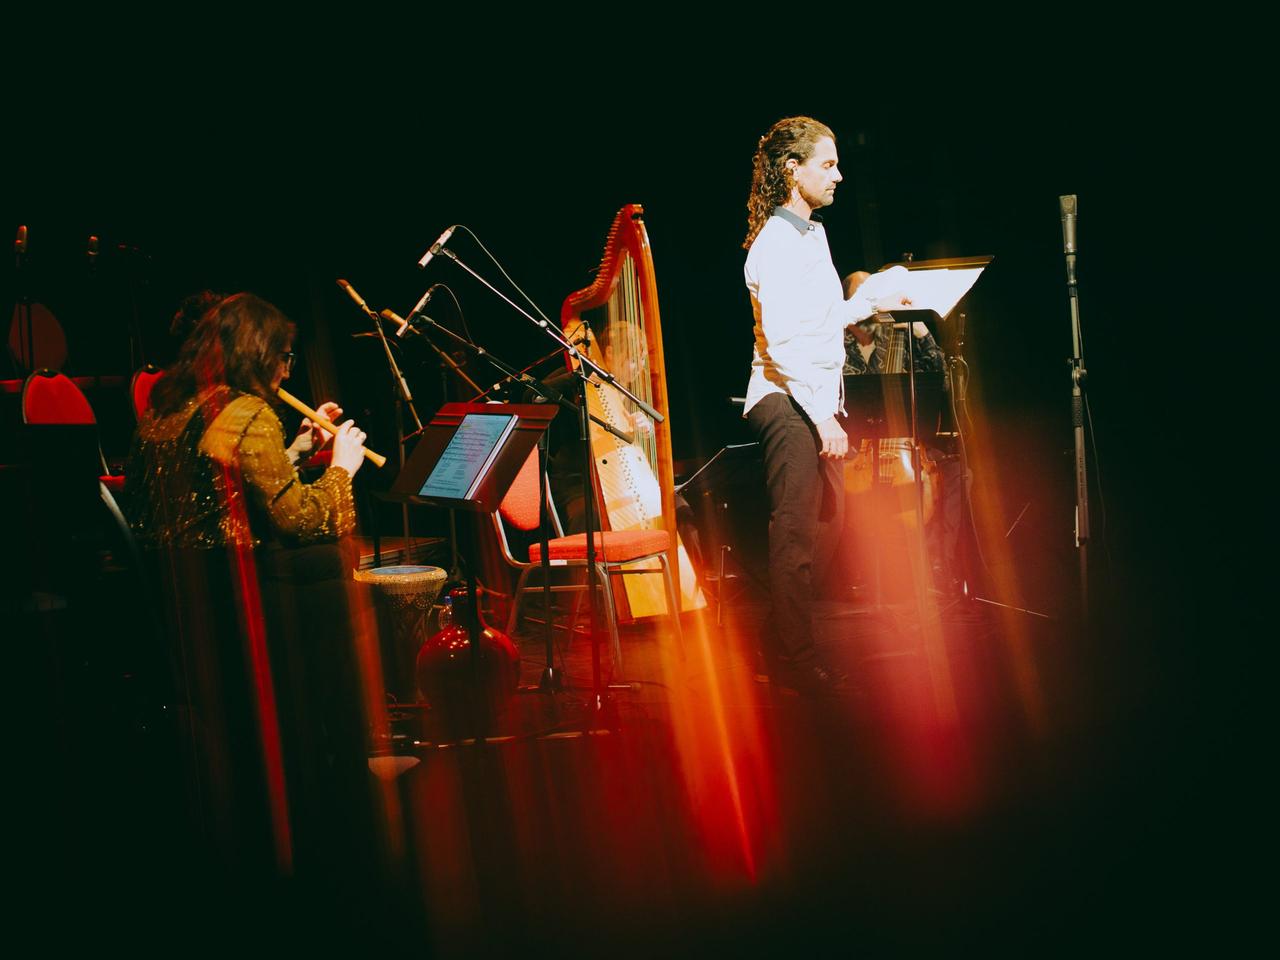 Ein Sänger steht vor einem Mikrofon, während hinter ihm eine Harfe und eine Flötenspielerin erkennbar ist.